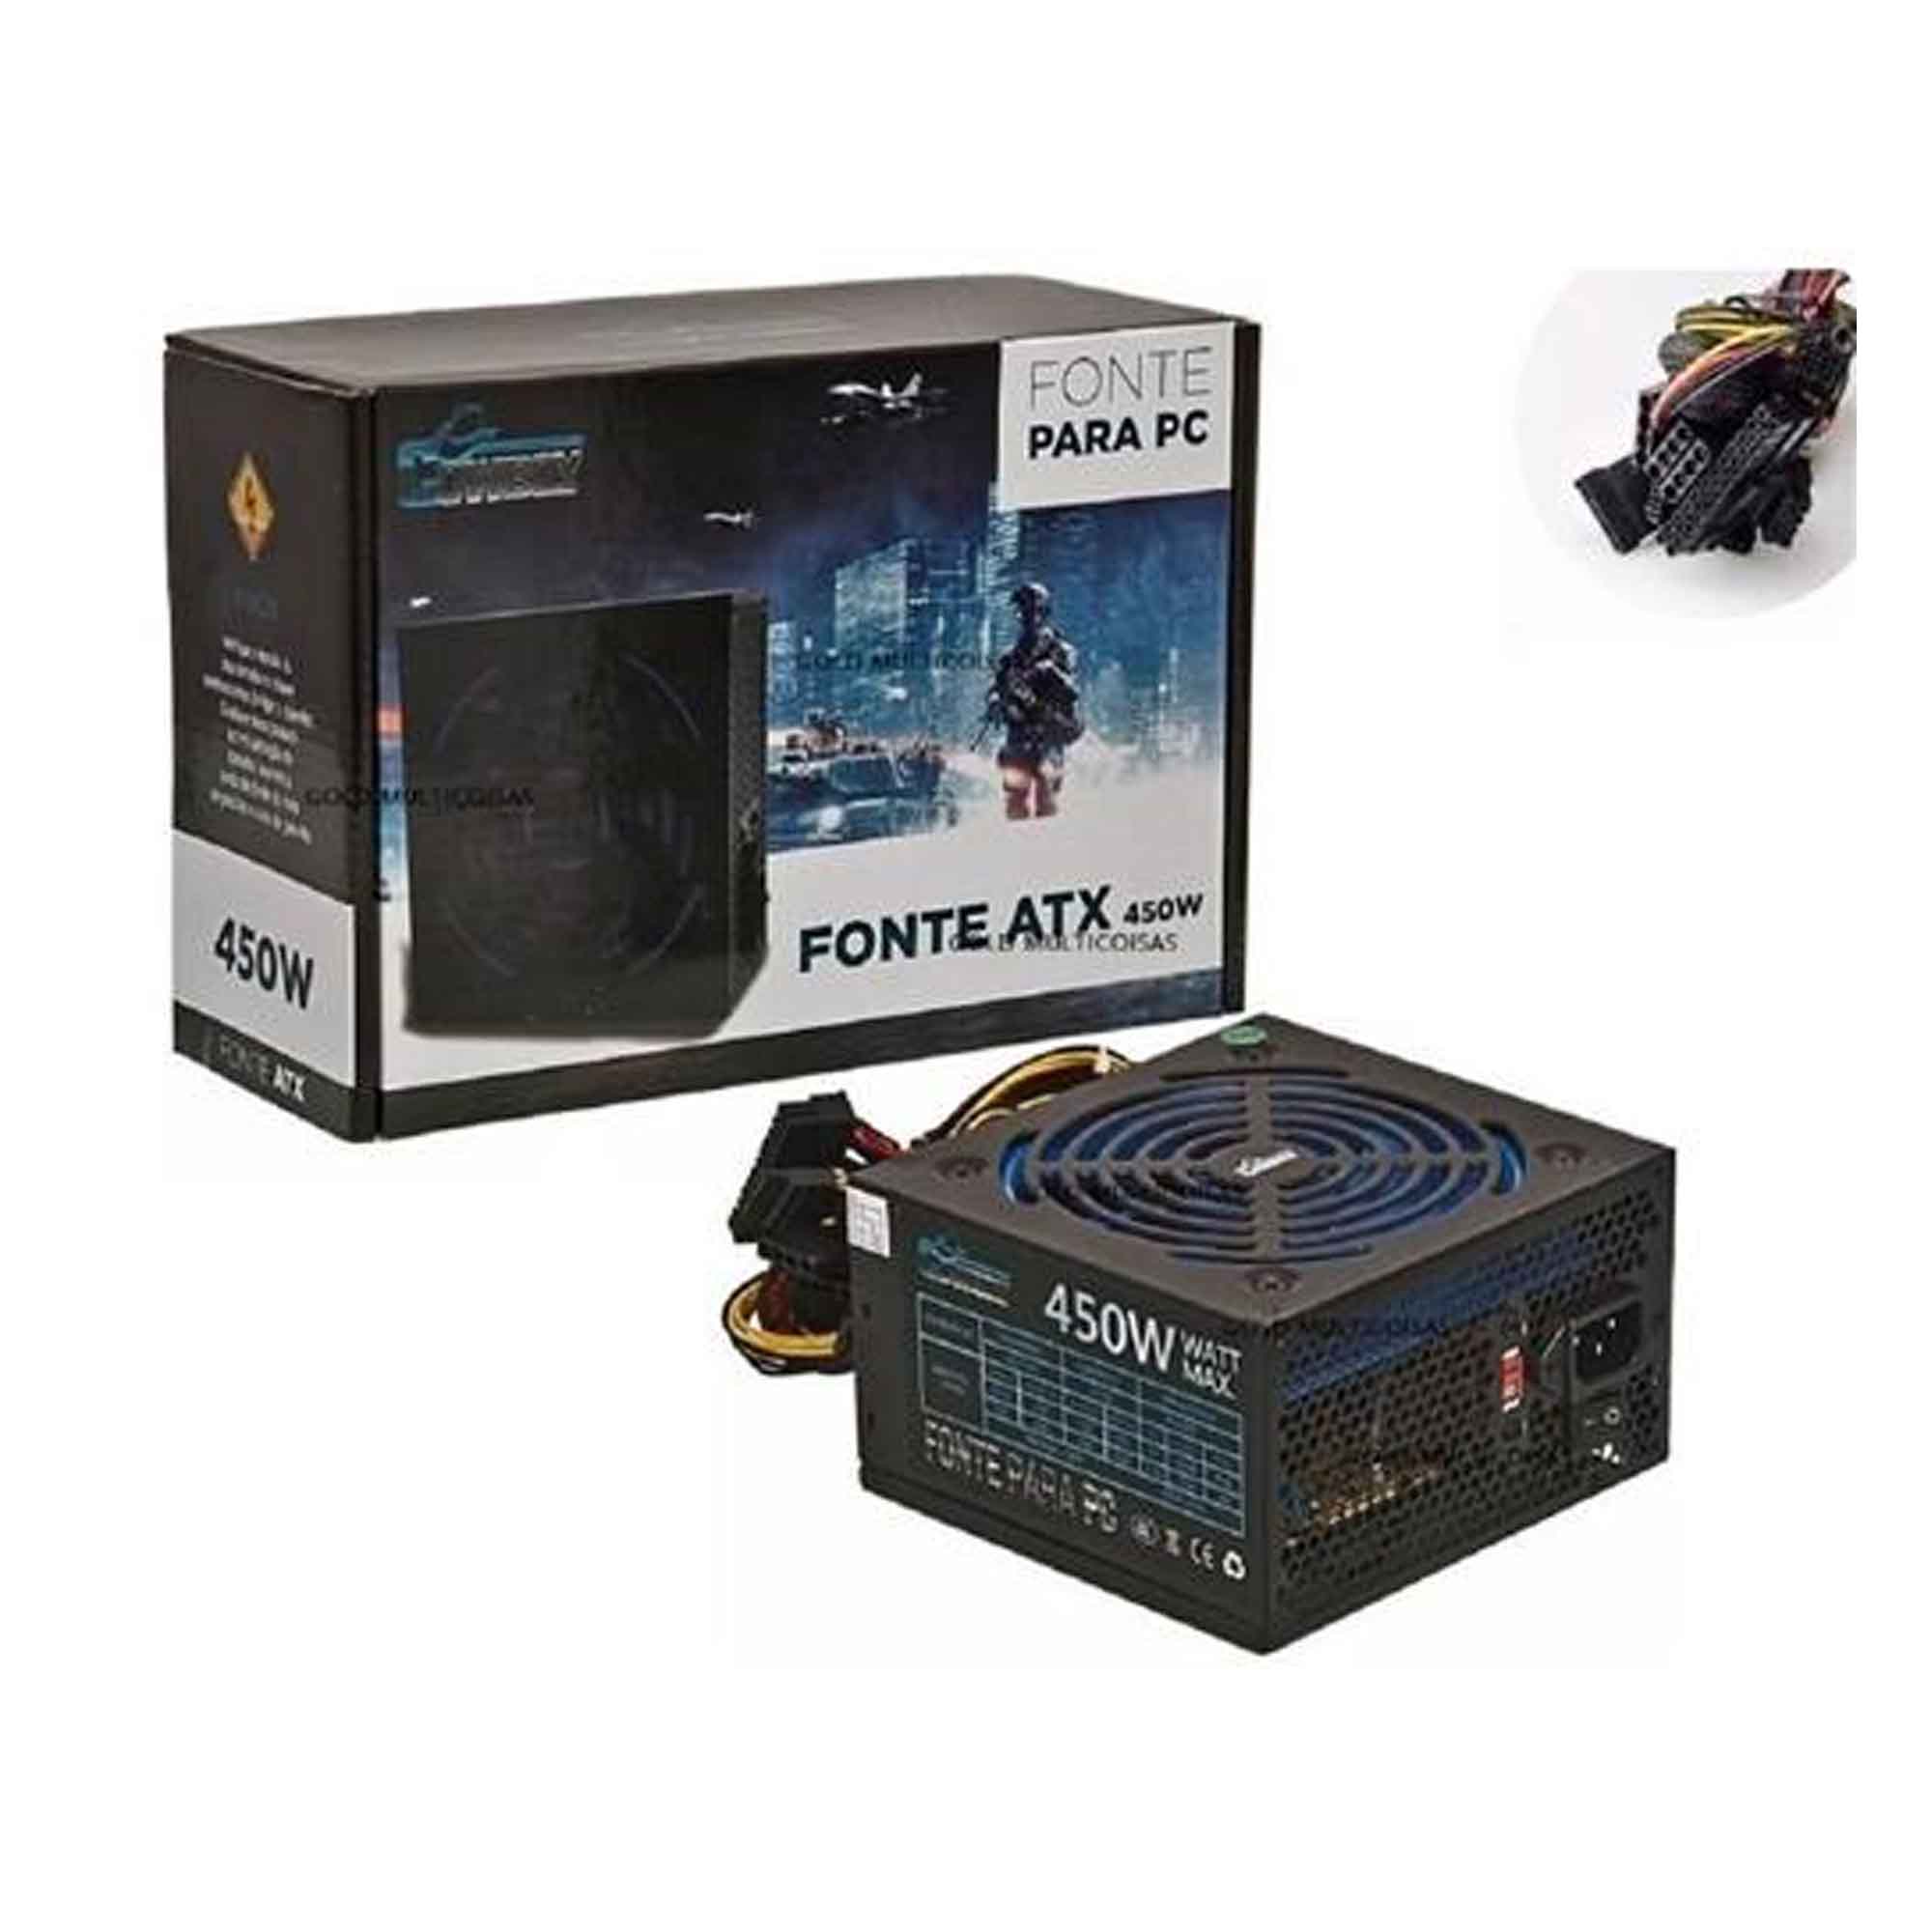 Fonte para PC ATX 450w Reais Azul Cabo Gamer Kanup Kp 533 Bivolt Atacadao Eletronicos